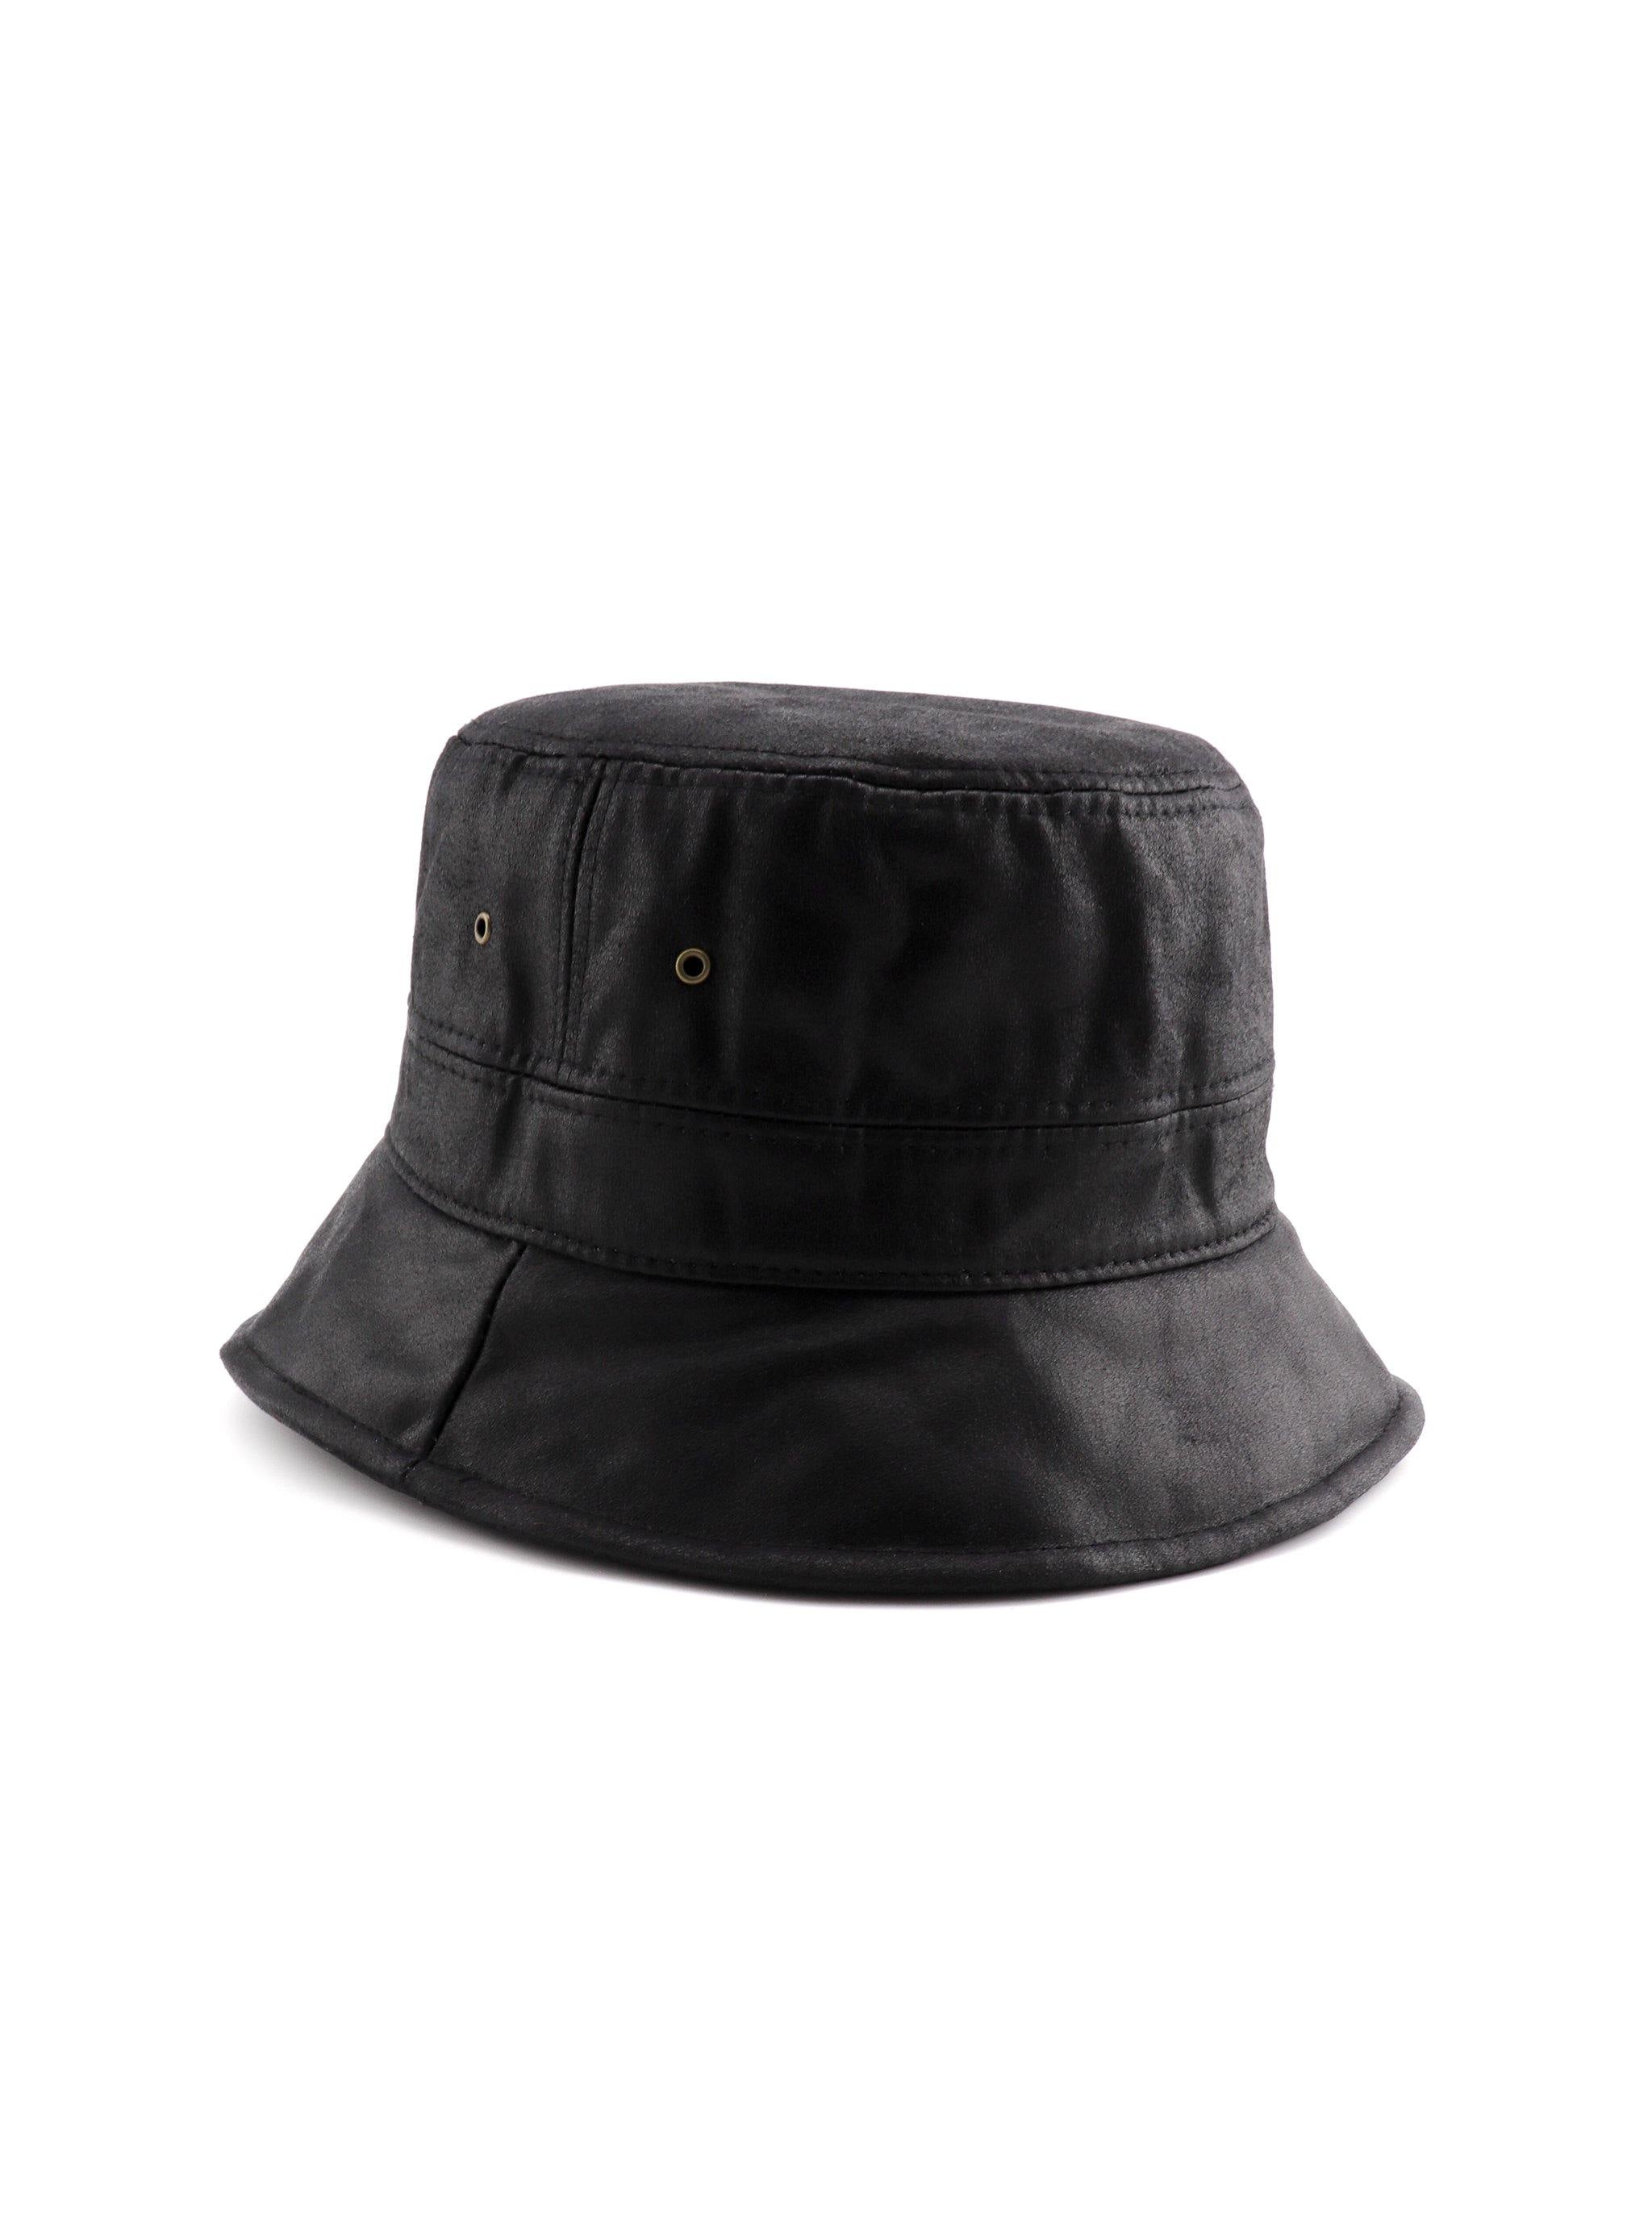 HYLTON BUCKET HAT - Simplique Mode